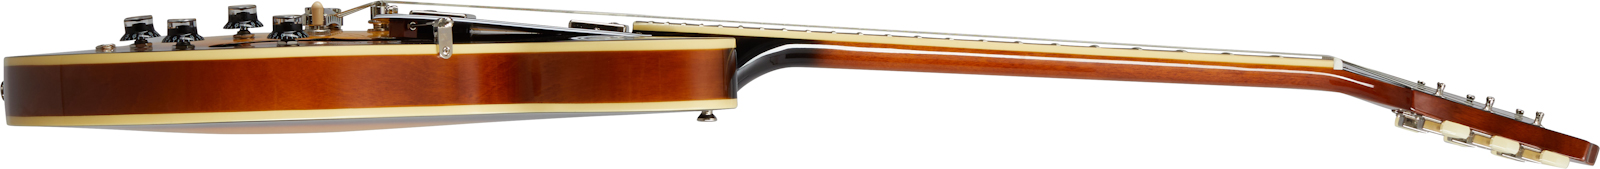 Epiphone Es-335 Lh Inspired By Gibson Original Gaucher 2h Ht Rw - Vintage Sunburst - E-Gitarre für Linkshänder - Variation 1